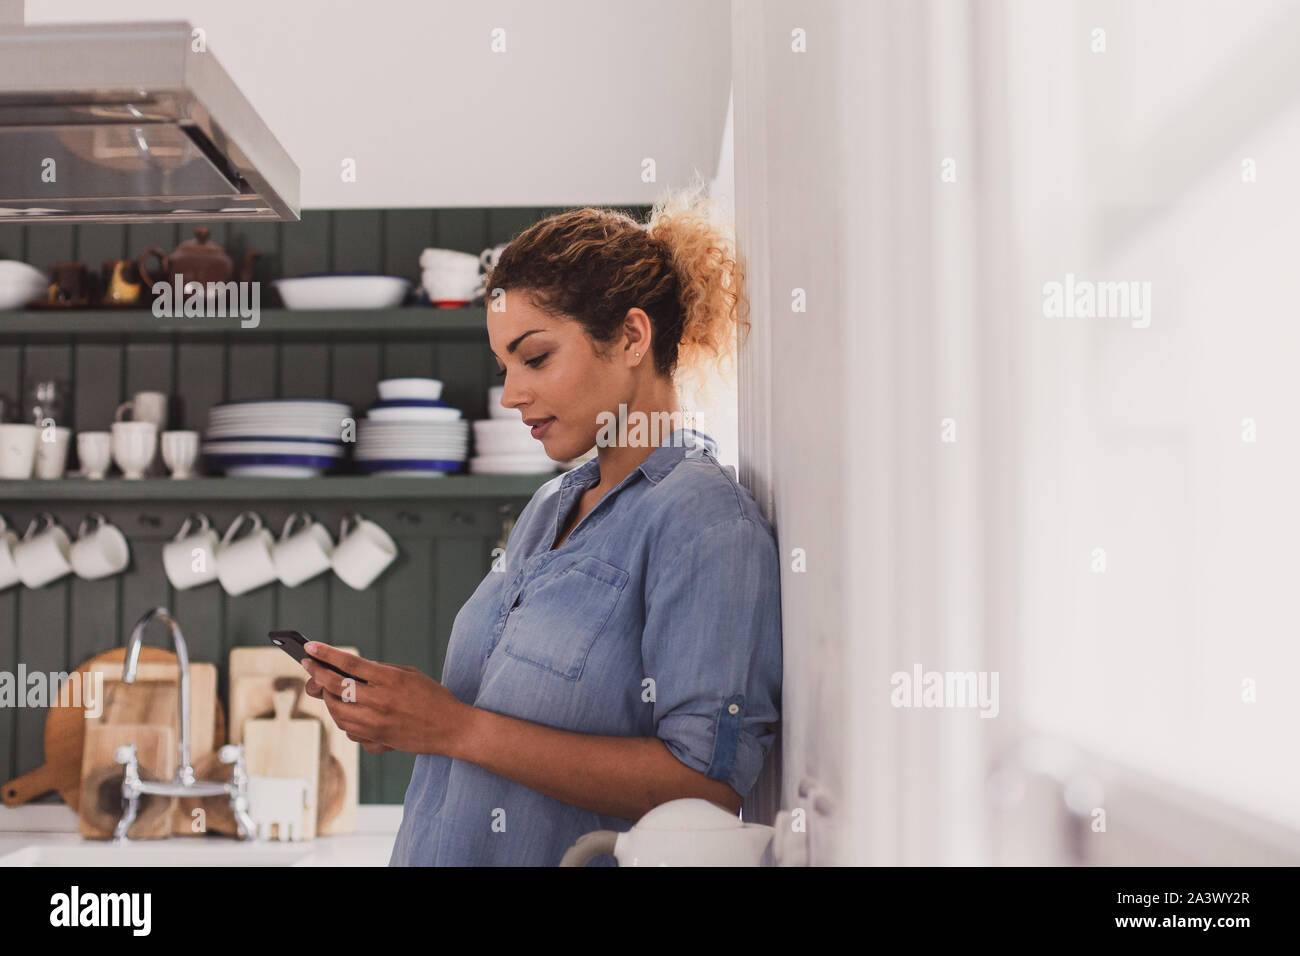 Nach weiblichen Blick auf Smartphone in der Küche Stockfoto